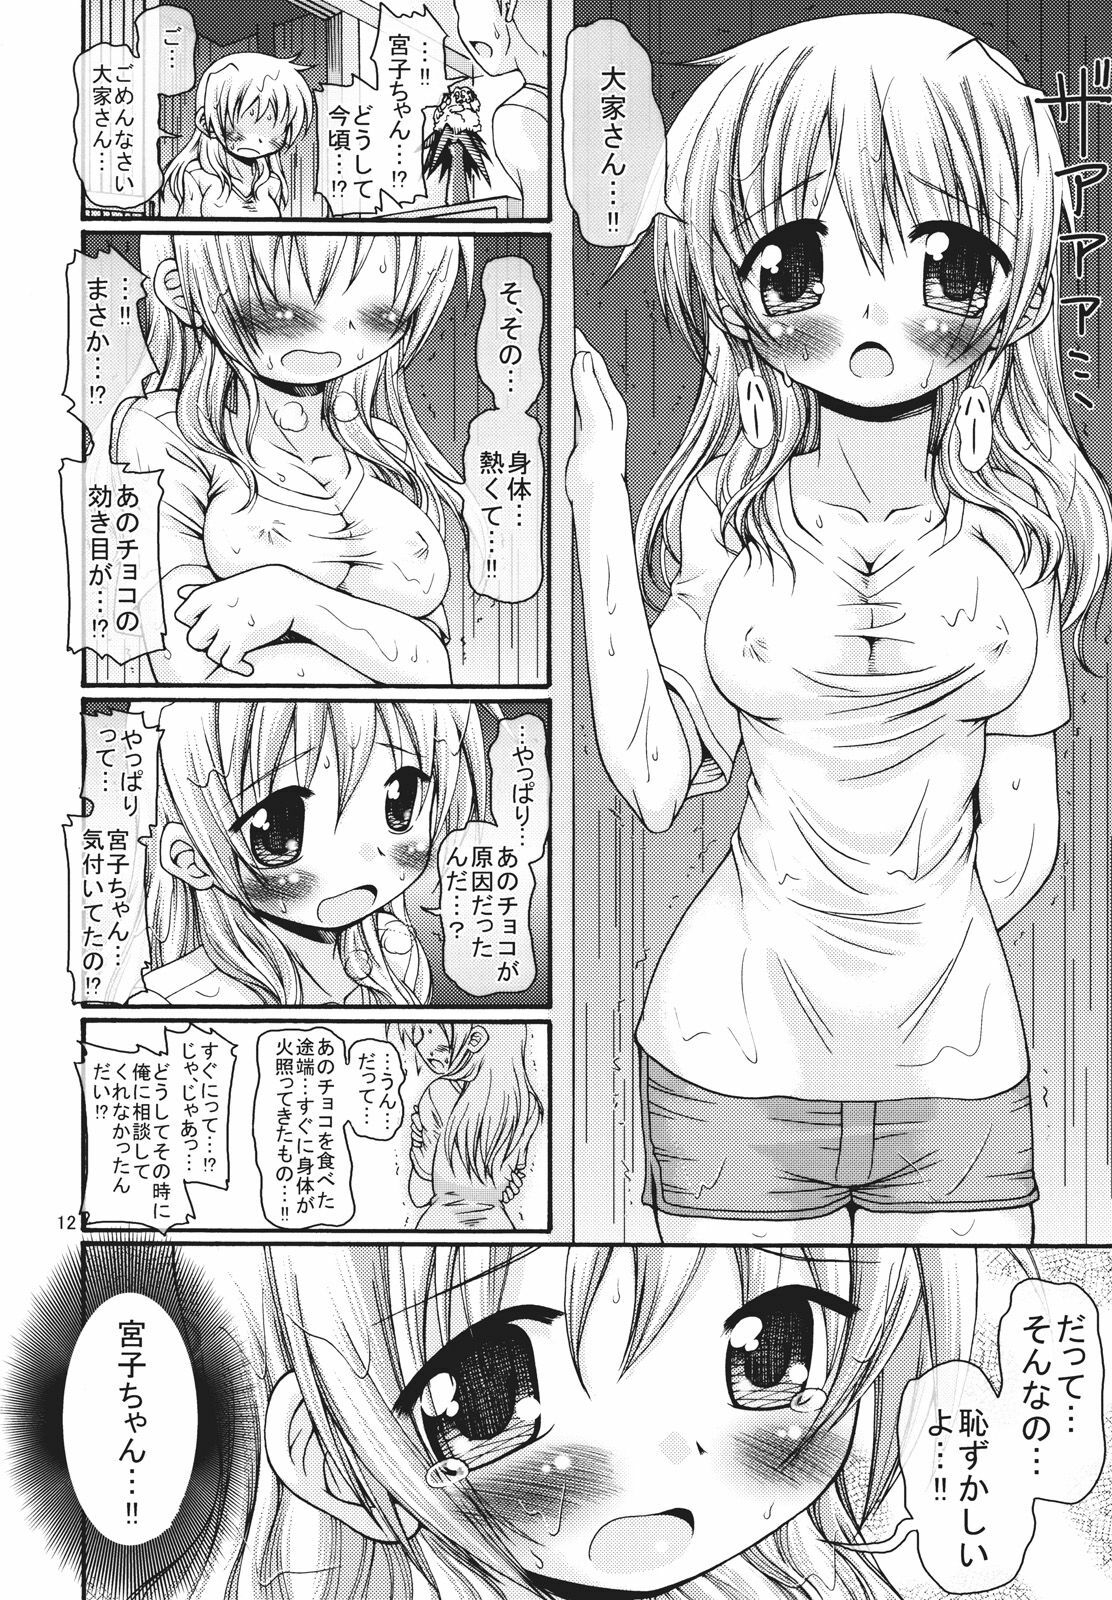 [FESTA. (Yoshitani Ganjitsu)] Taiyou Shoujo (Hidamari Sketch) [2008-03-16] page 11 full